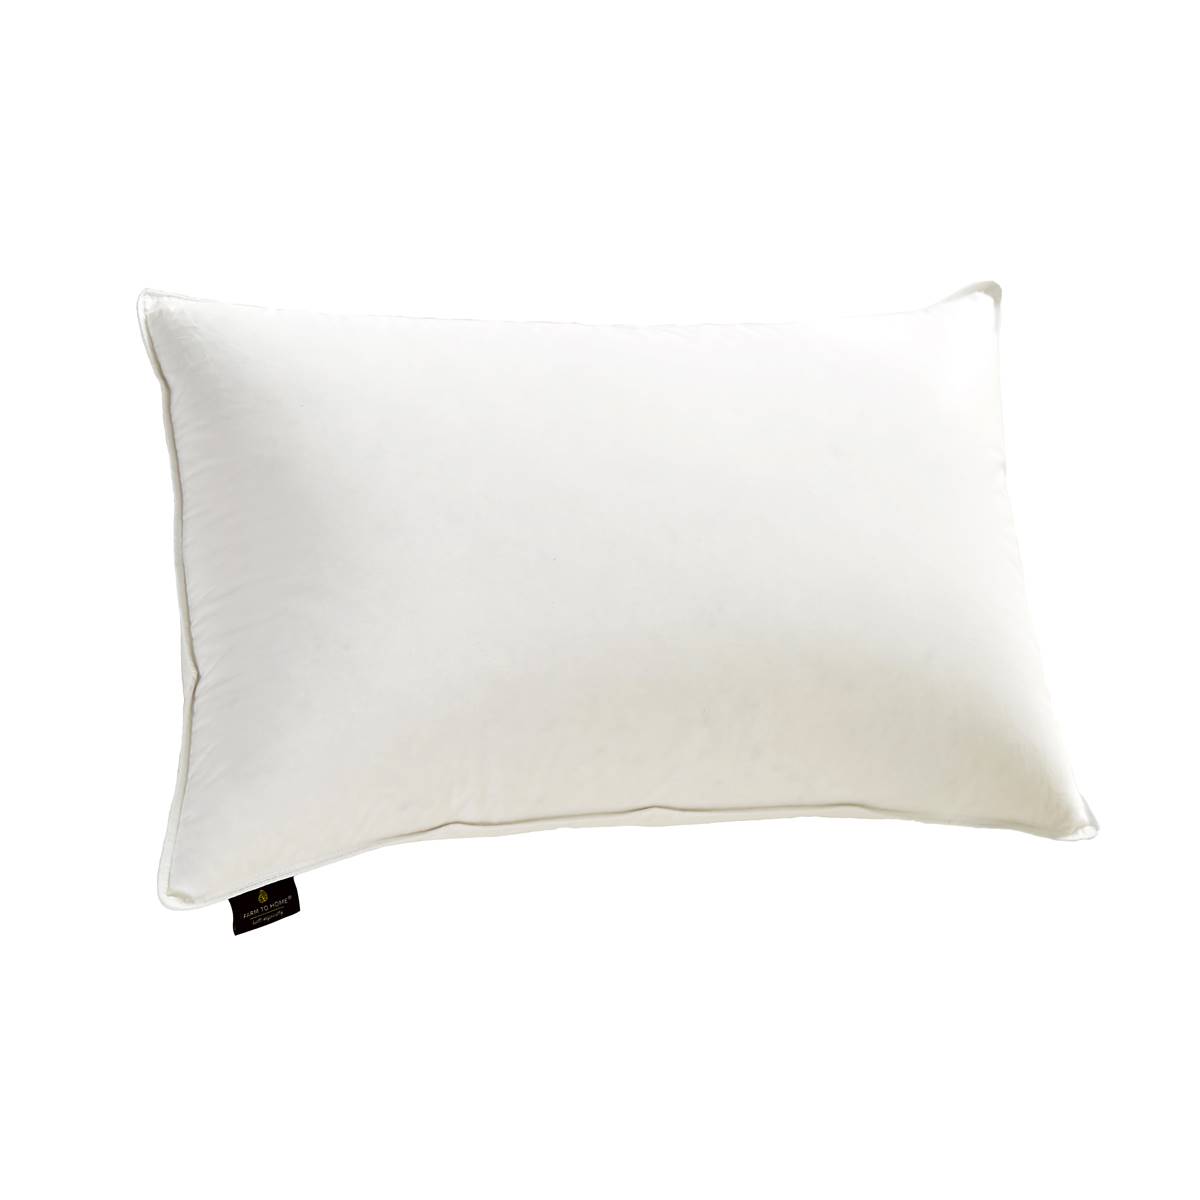 Farm To Home Organic Cotton Premium White Down Bed Pillow